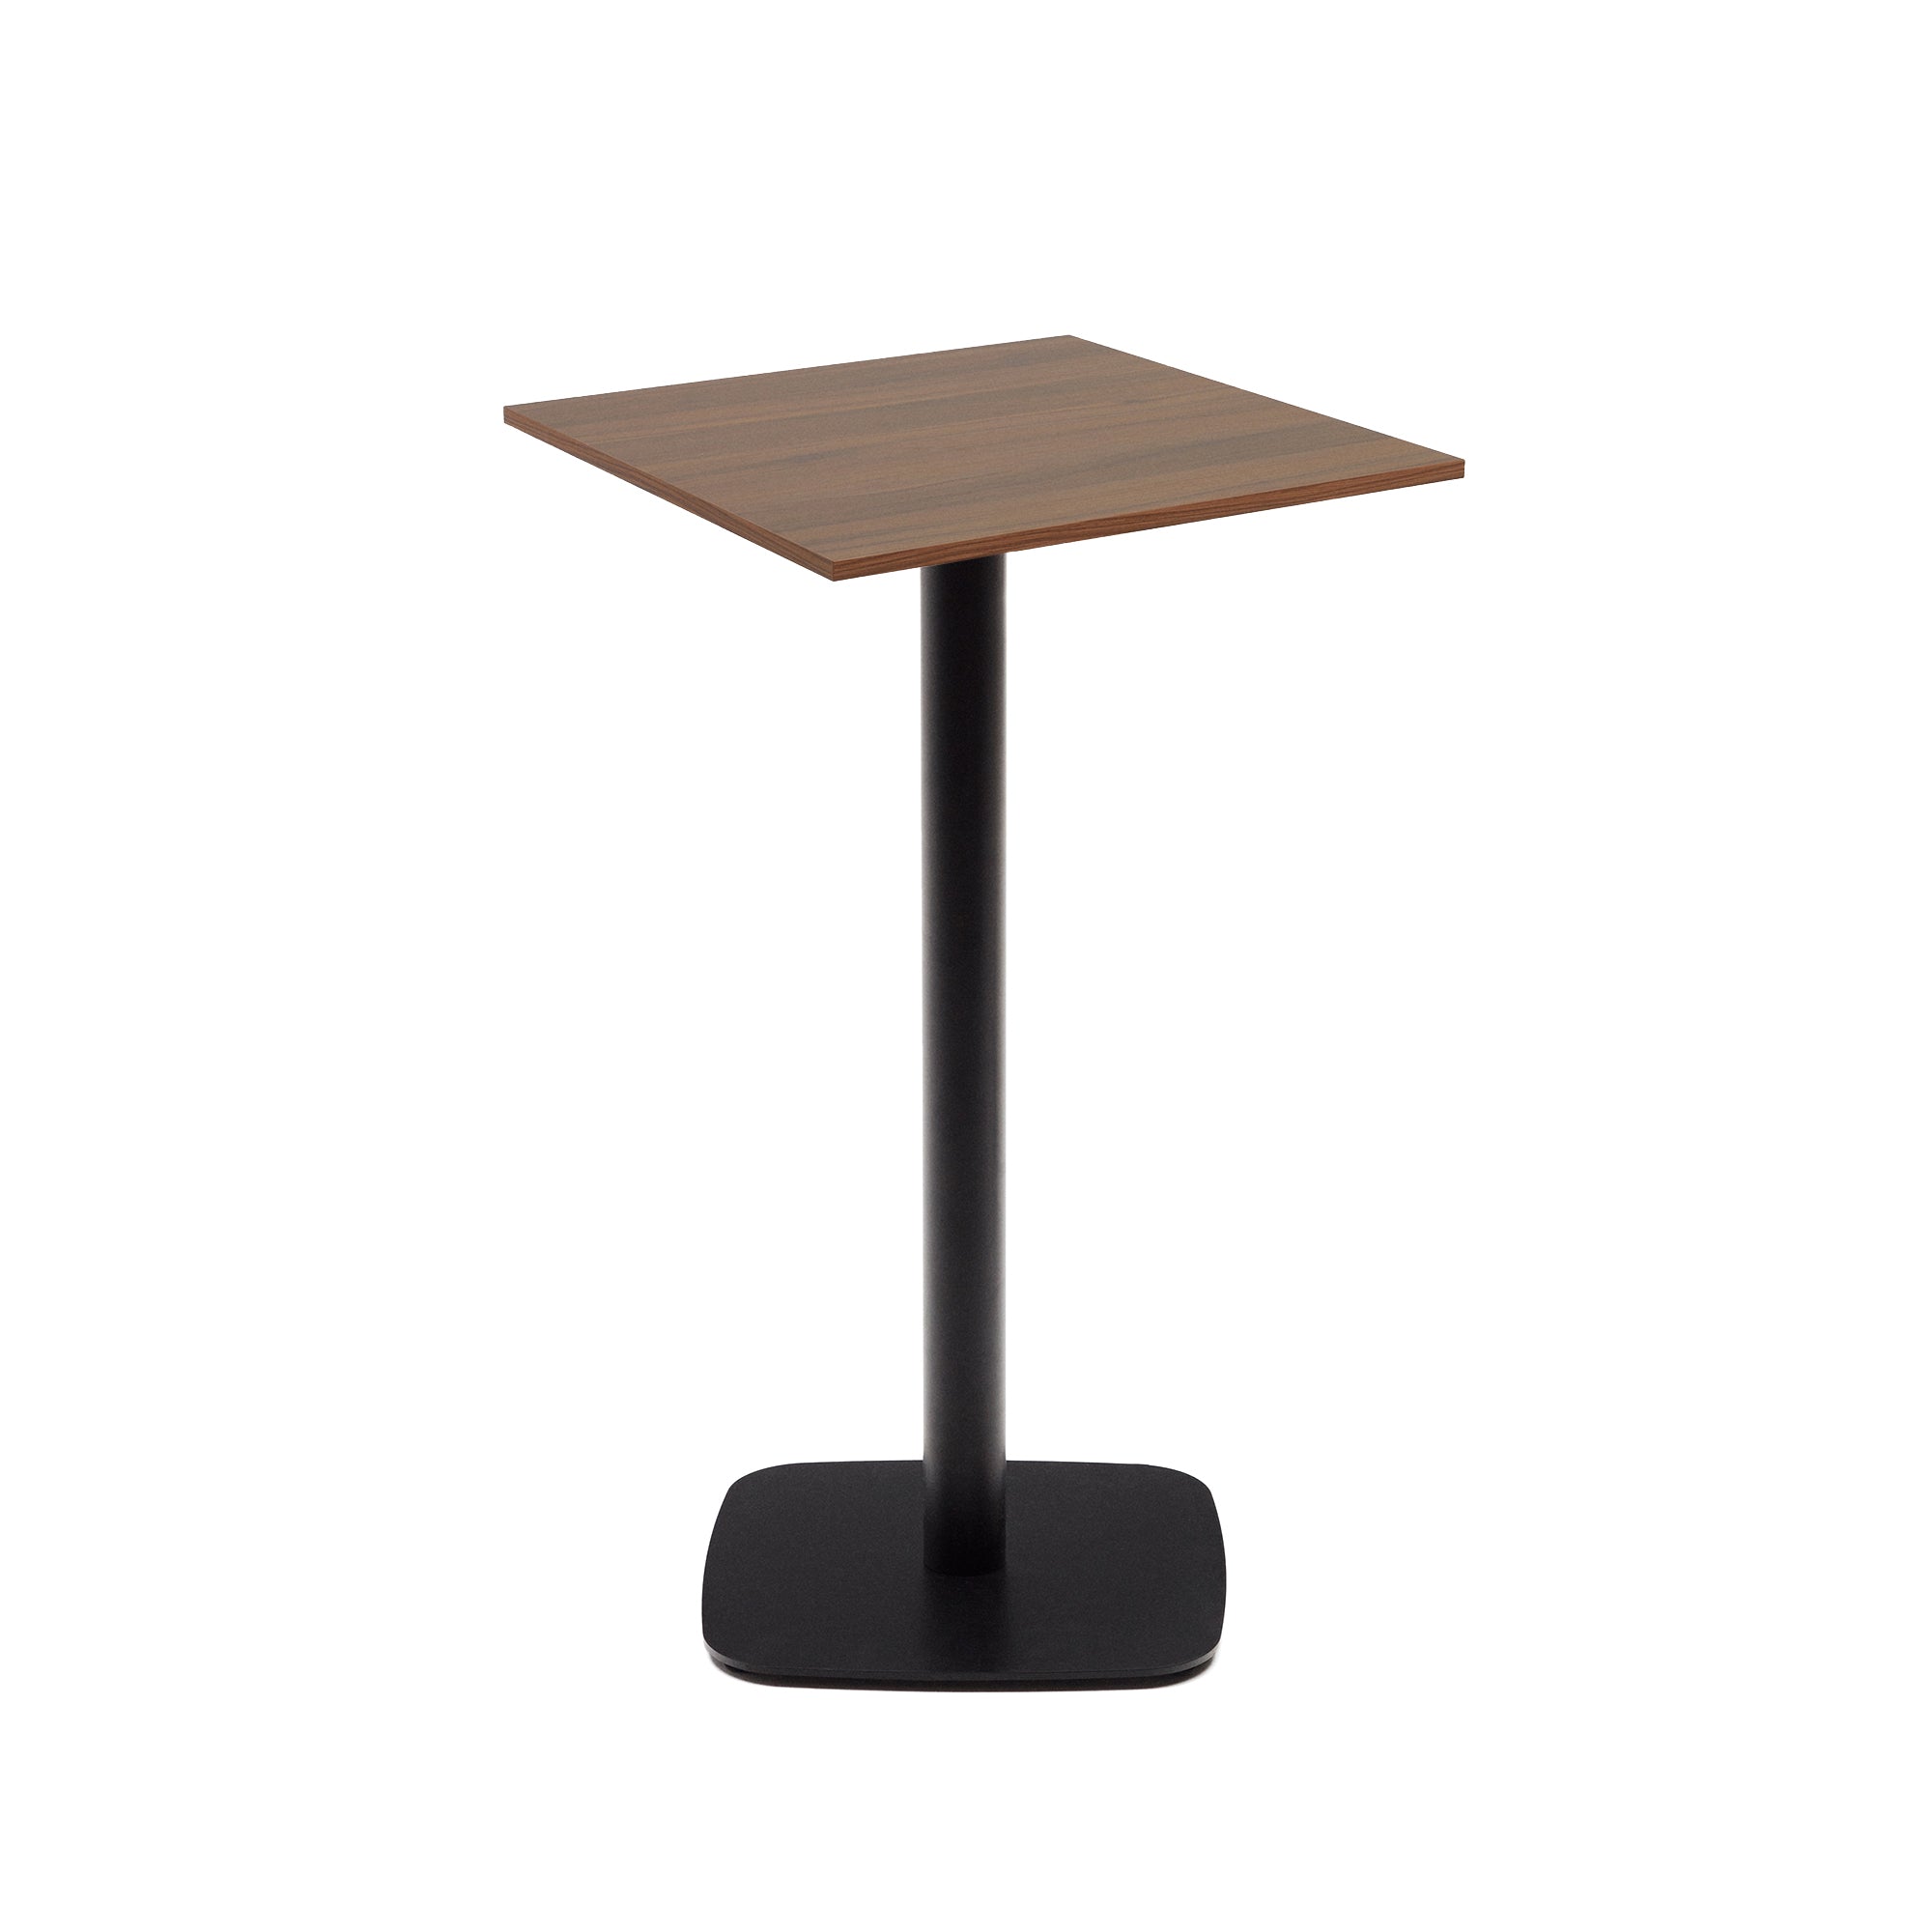 Dina magas asztal diófa melaminból, fekete festett fémlábbal, 60x60x96 cm, 60x60x96 cm